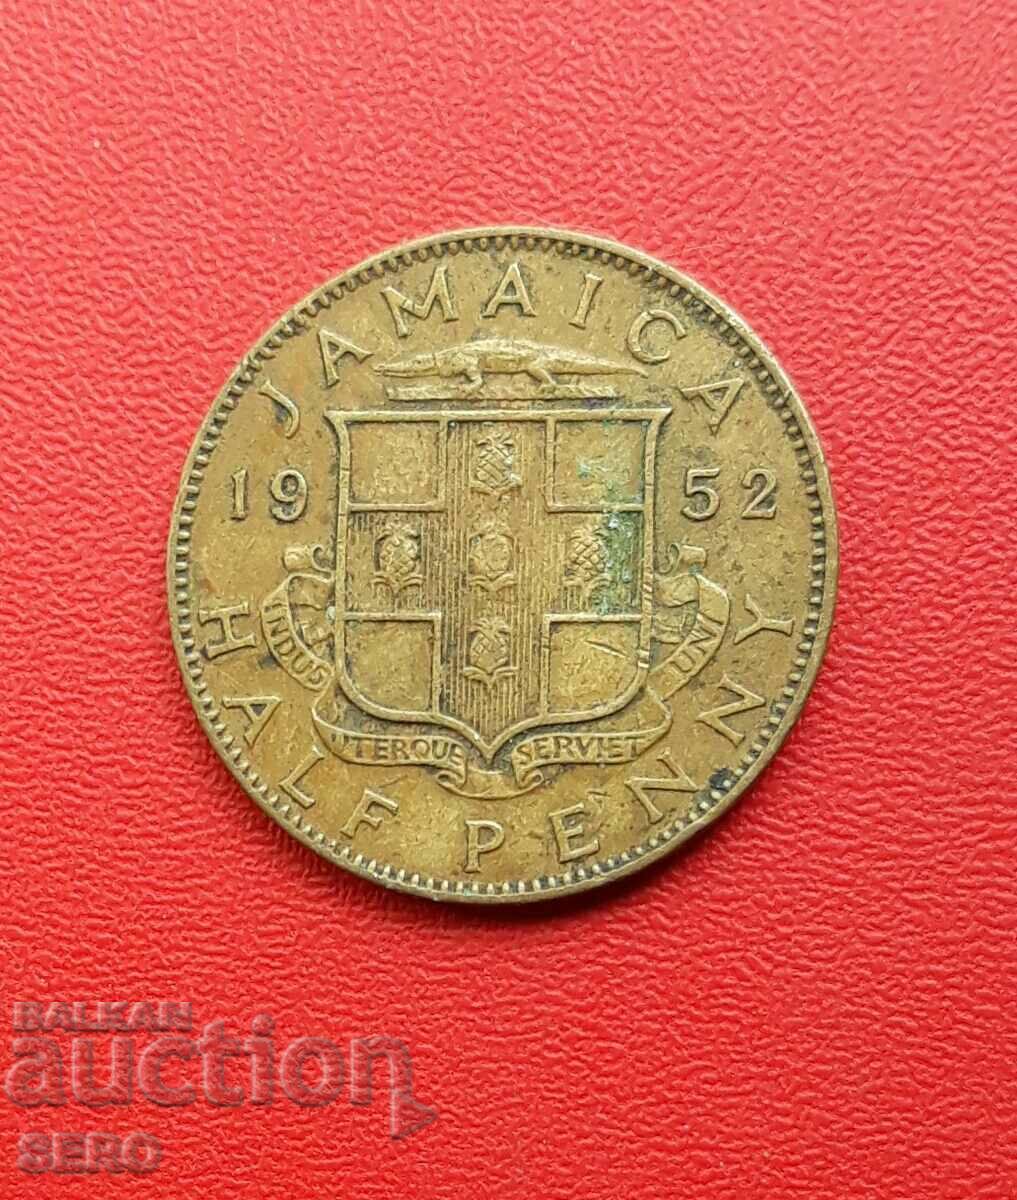 Insula Jamaica - 1/2 penny 1952